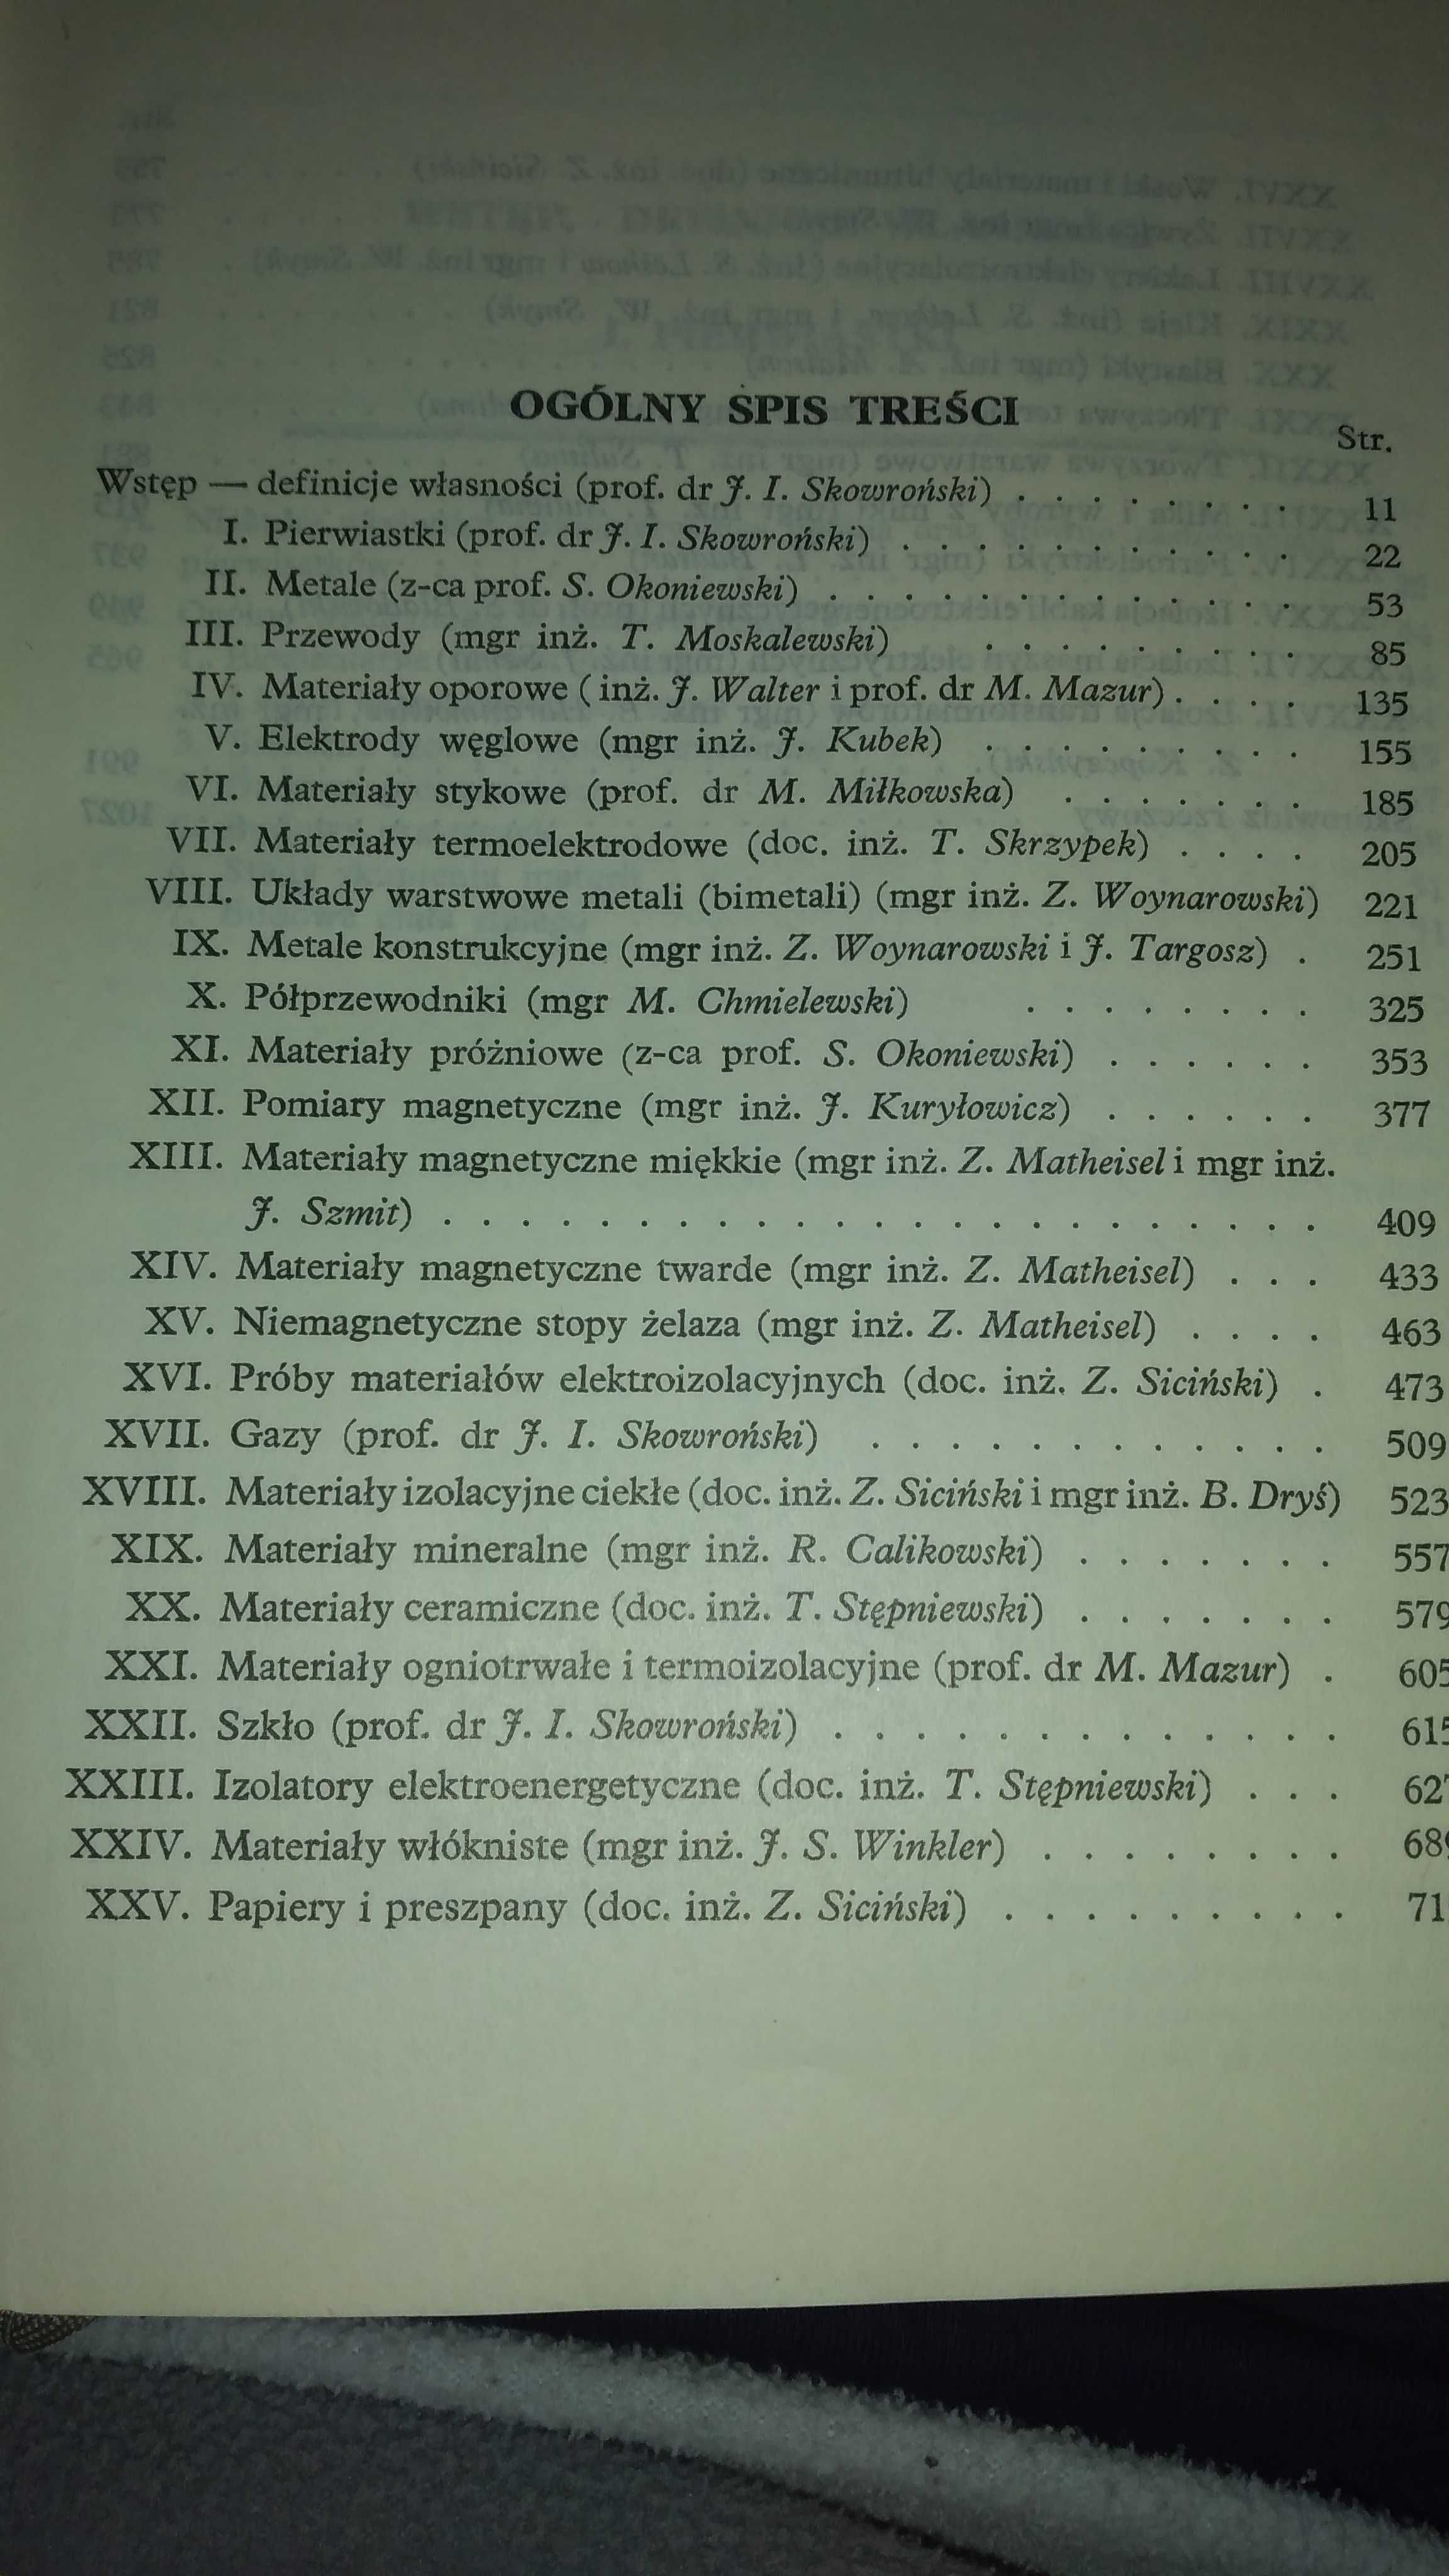 Dziewoński E. (1959). "Poradnik Materiałoznastwa elektrycznego".